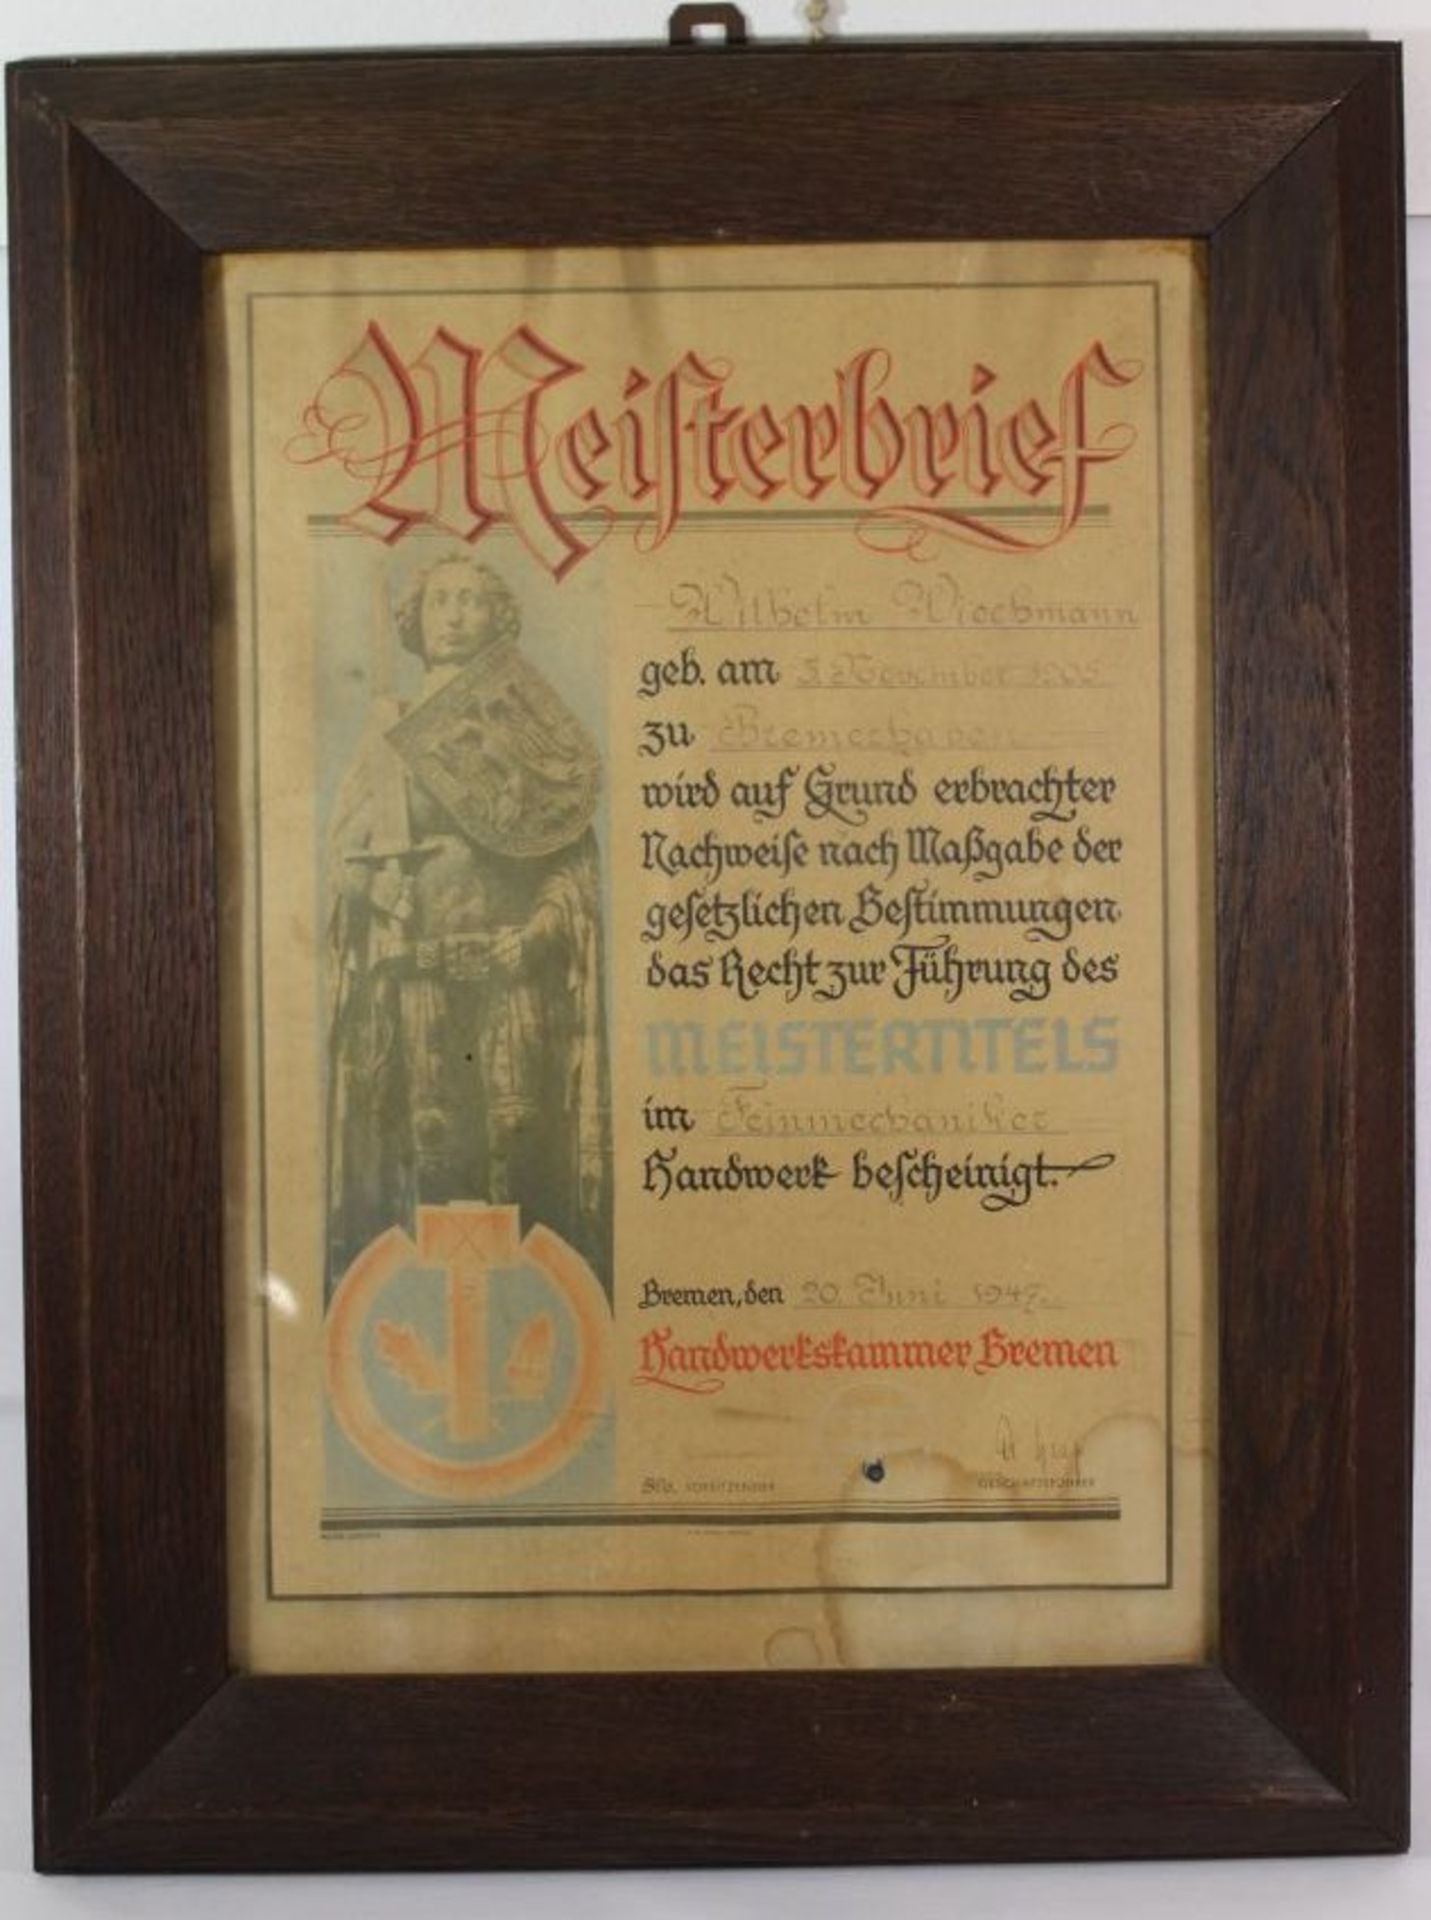 Meisterbrief von 1947 in altem Eicherahmen, RG 61 x 46cm.